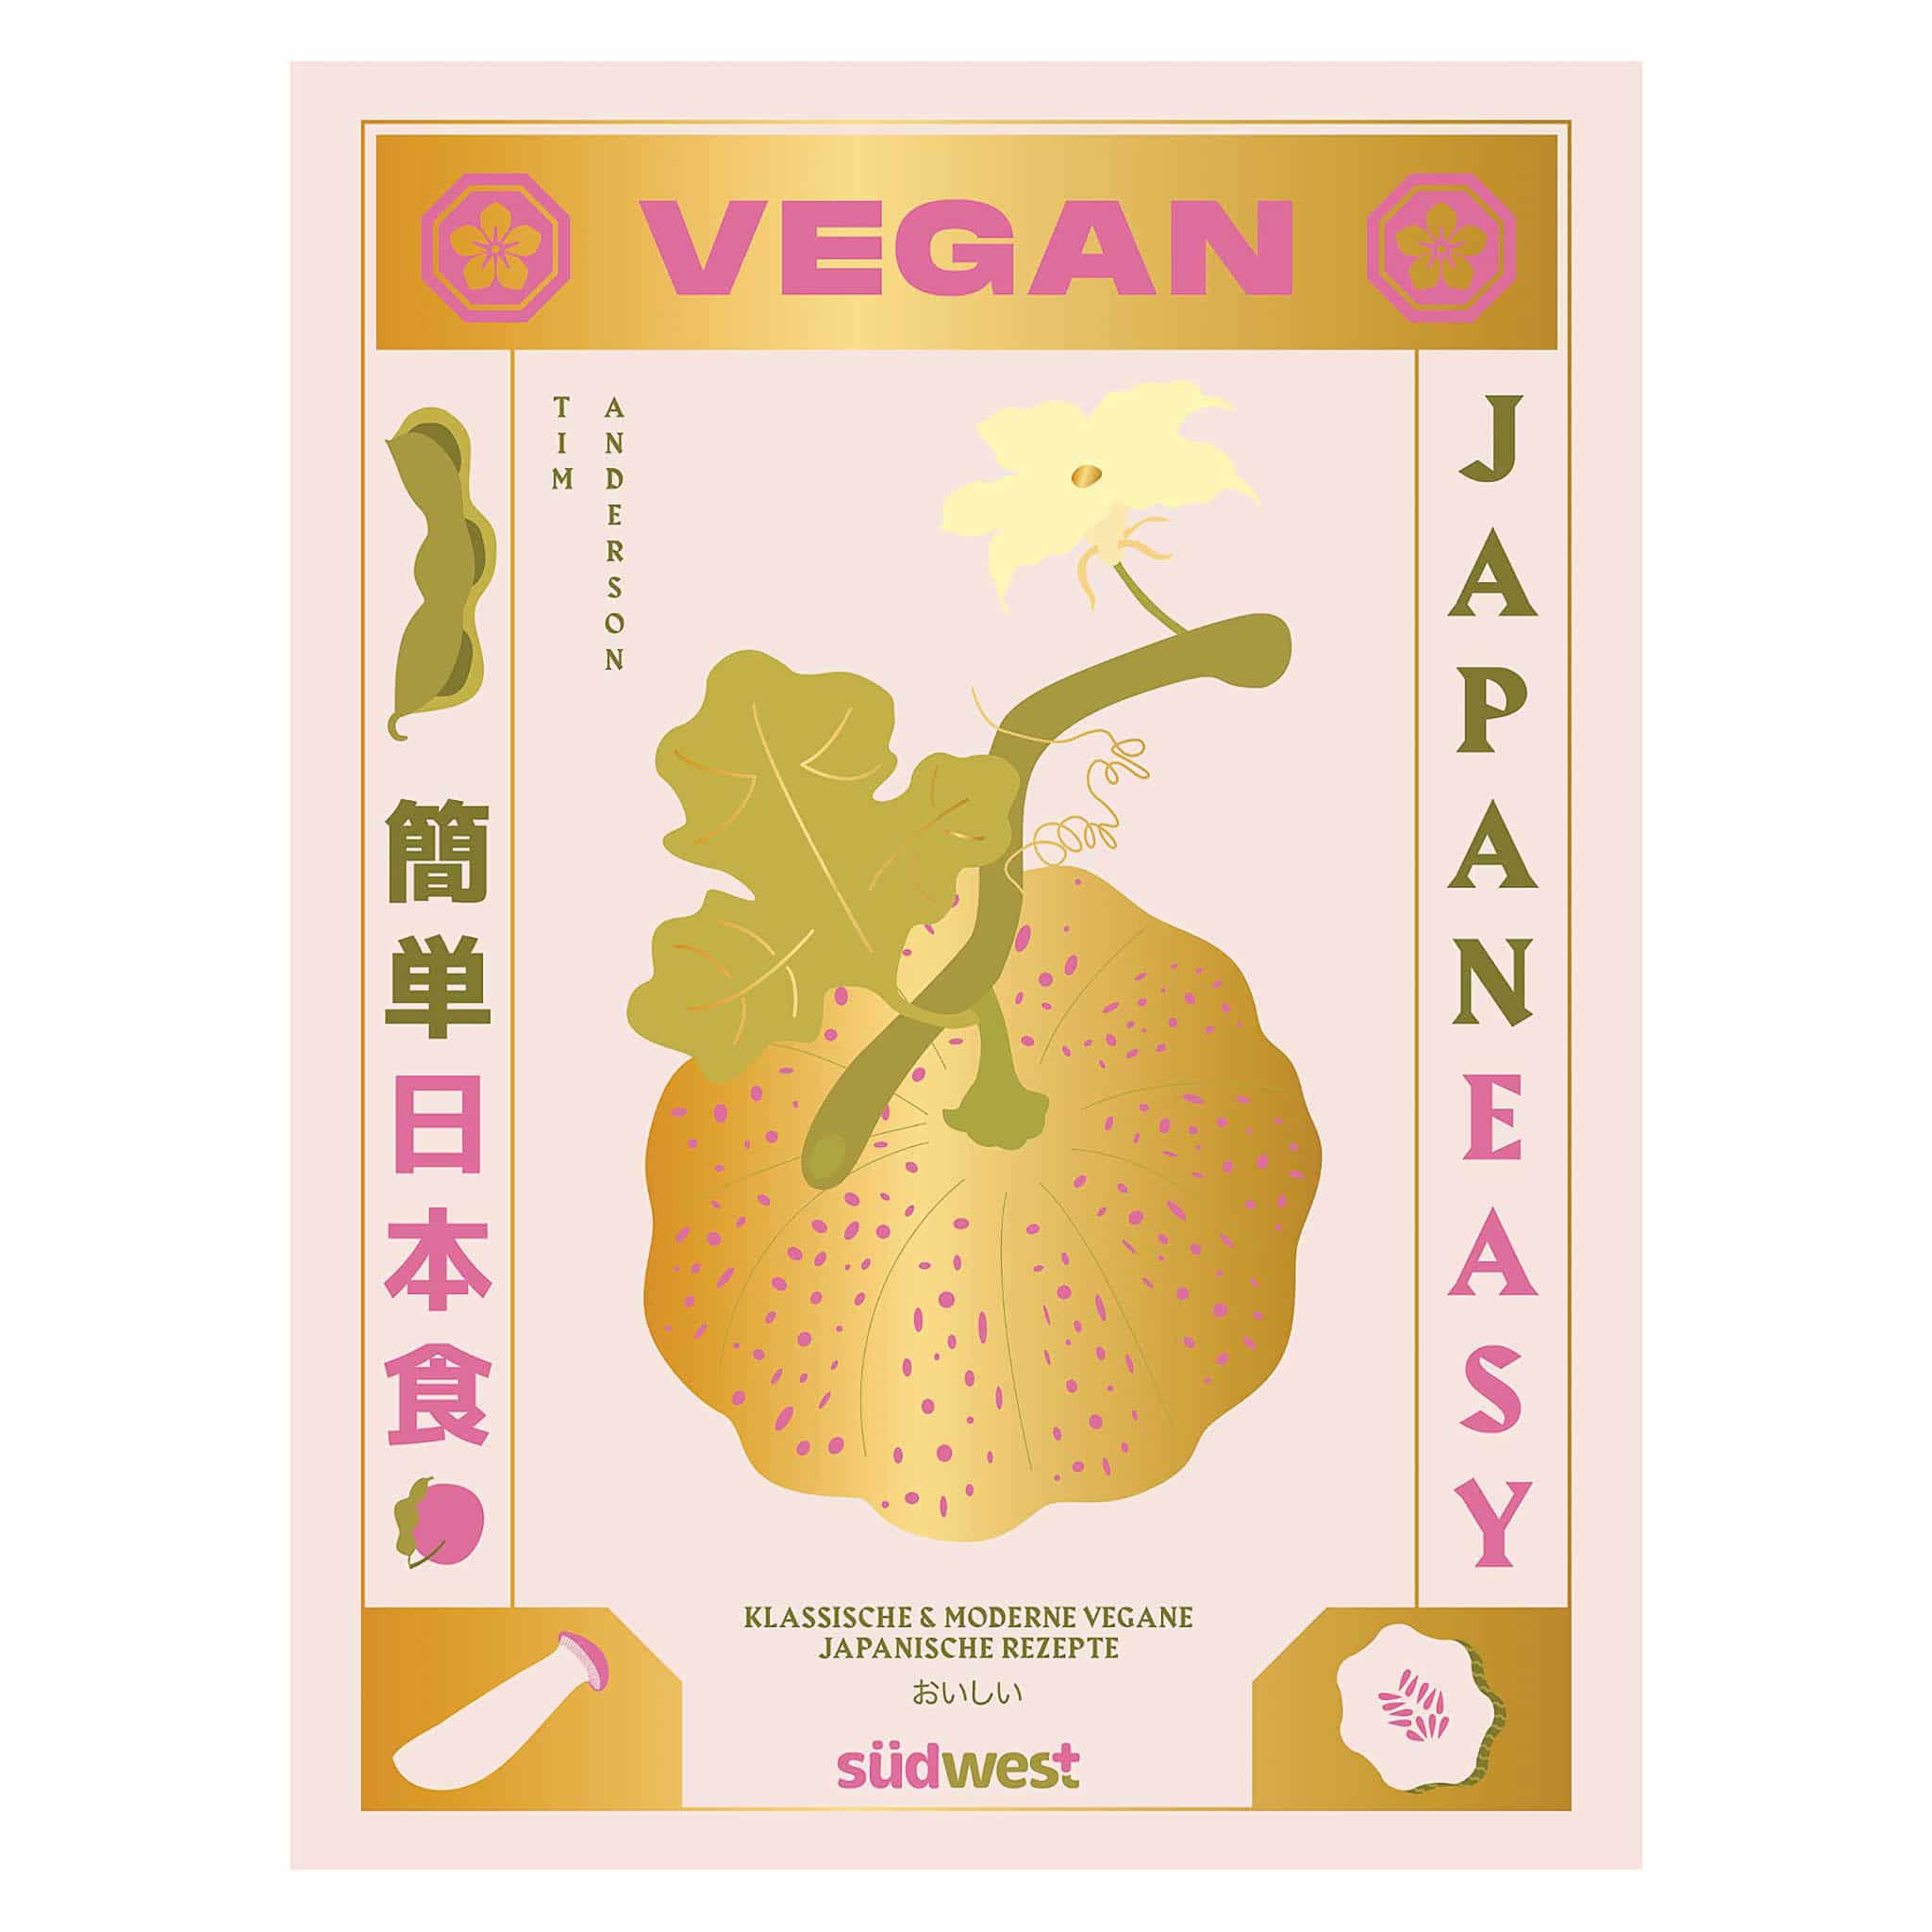 Vegan Japan Easy by Tim Anderson